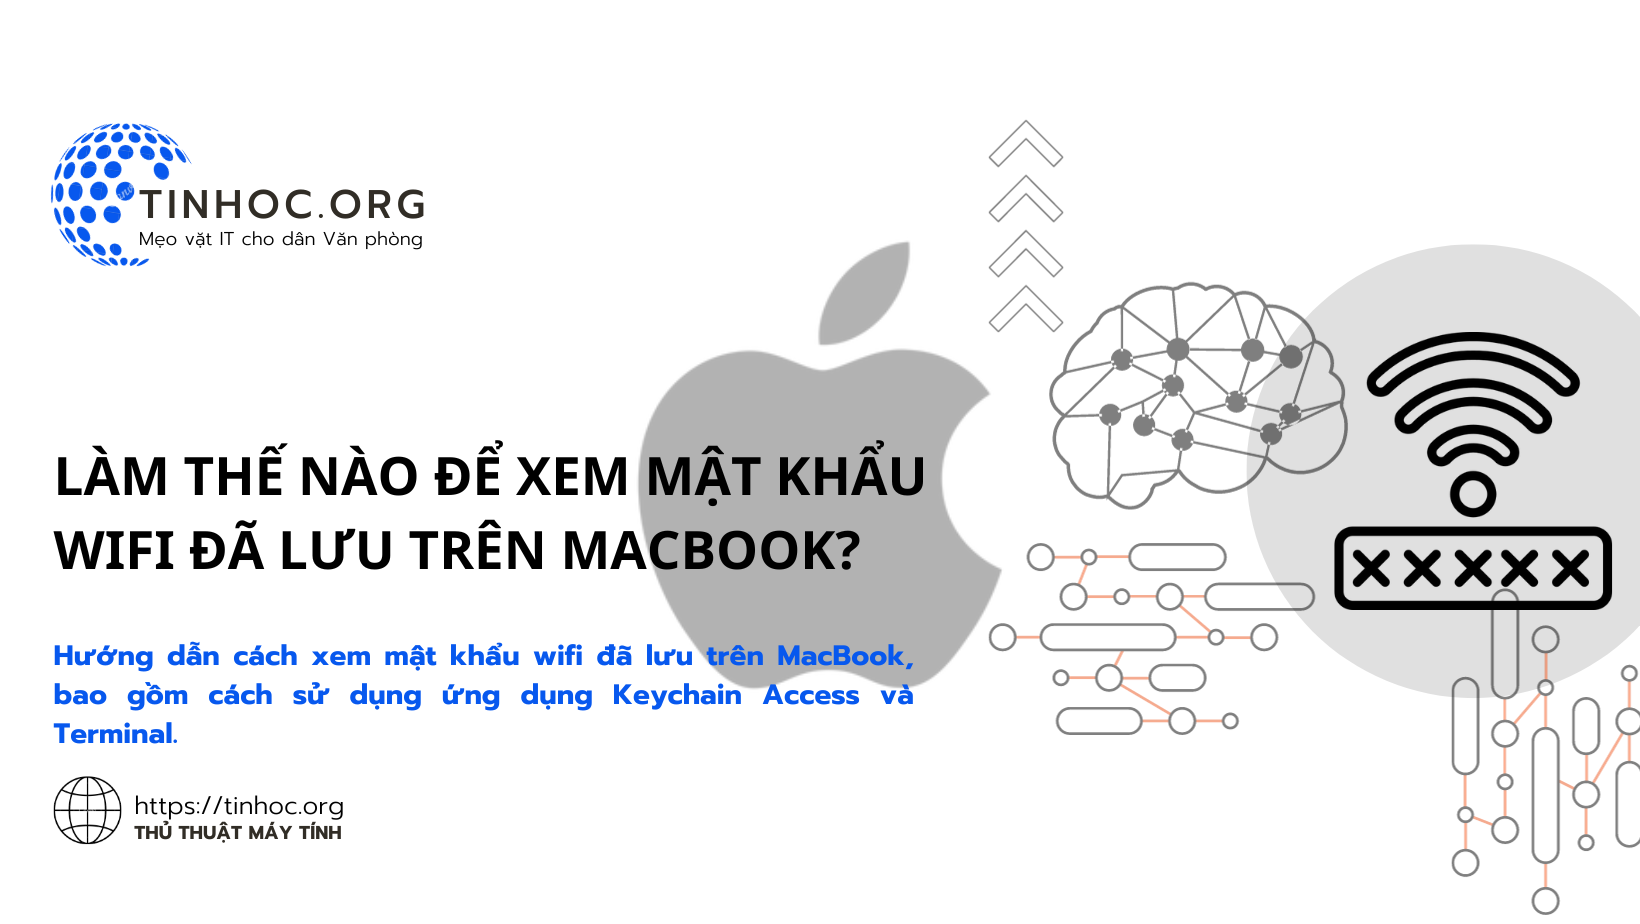 Hướng dẫn cách xem mật khẩu wifi đã lưu trên MacBook, bao gồm cách sử dụng ứng dụng Keychain Access và Terminal.